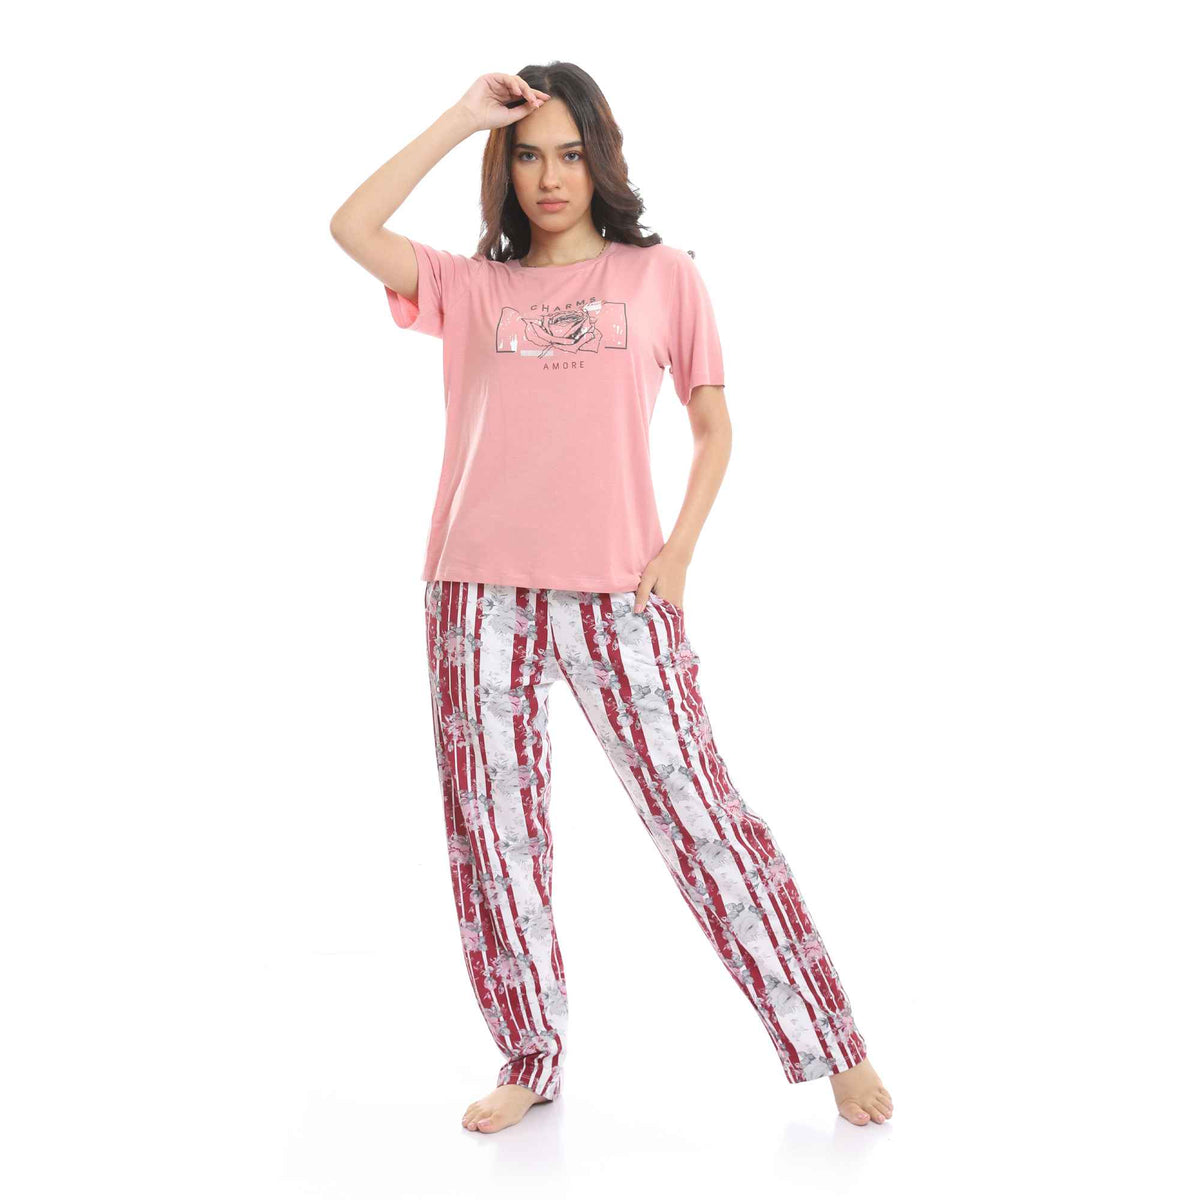 Round Neck Tee & Patterned Pants Pajama Set - Pink & White